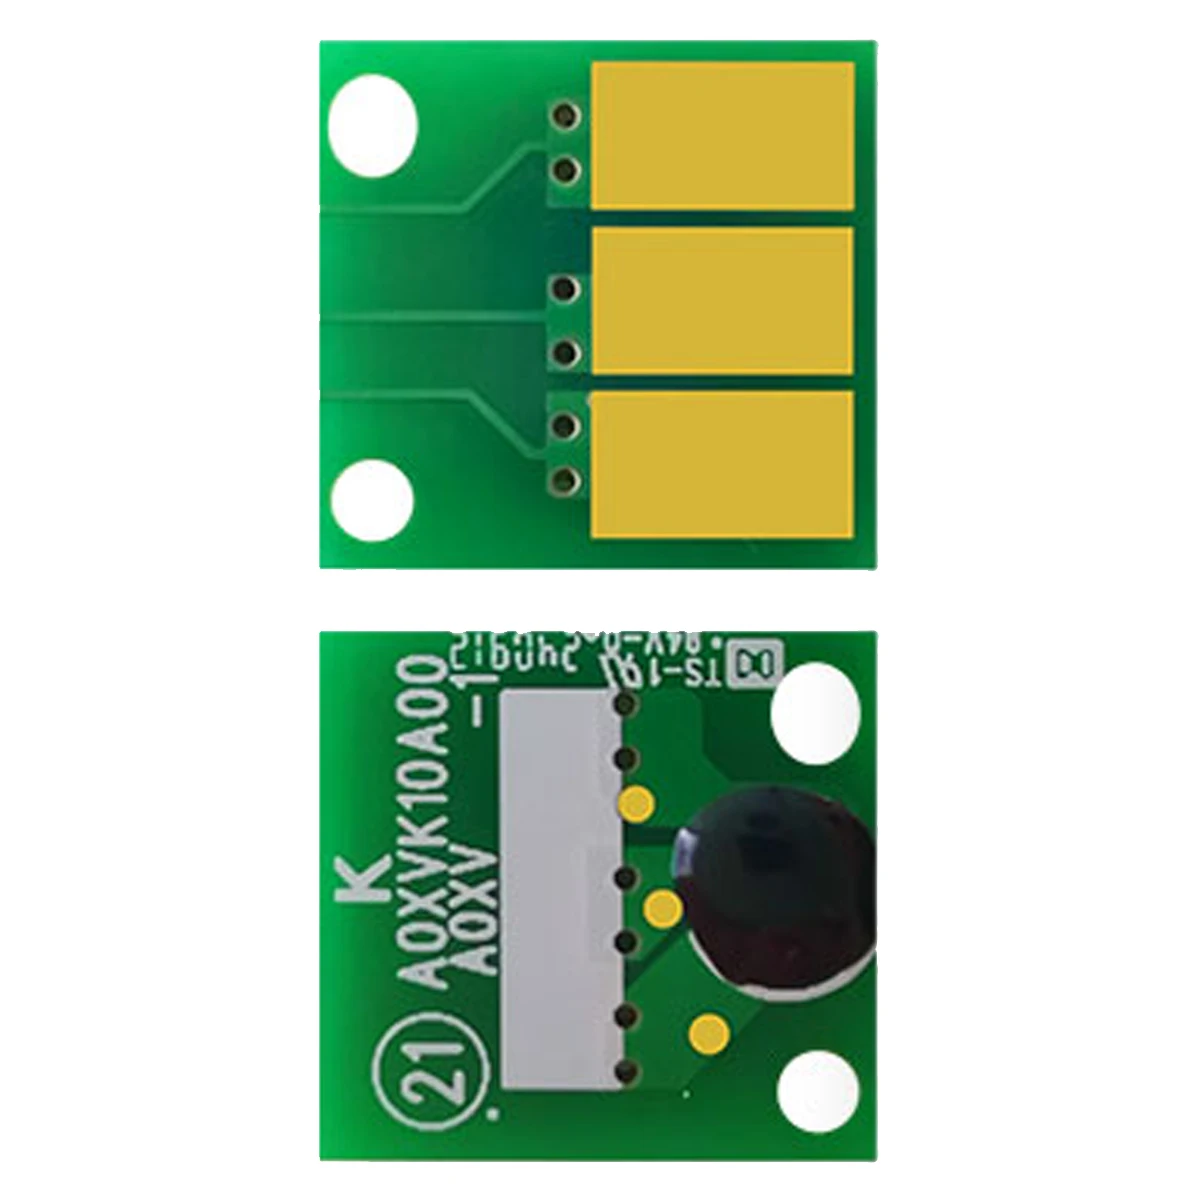 

Drum chip for Minolta bizhub C227 C287 C367 laser printer copier cartridge refill